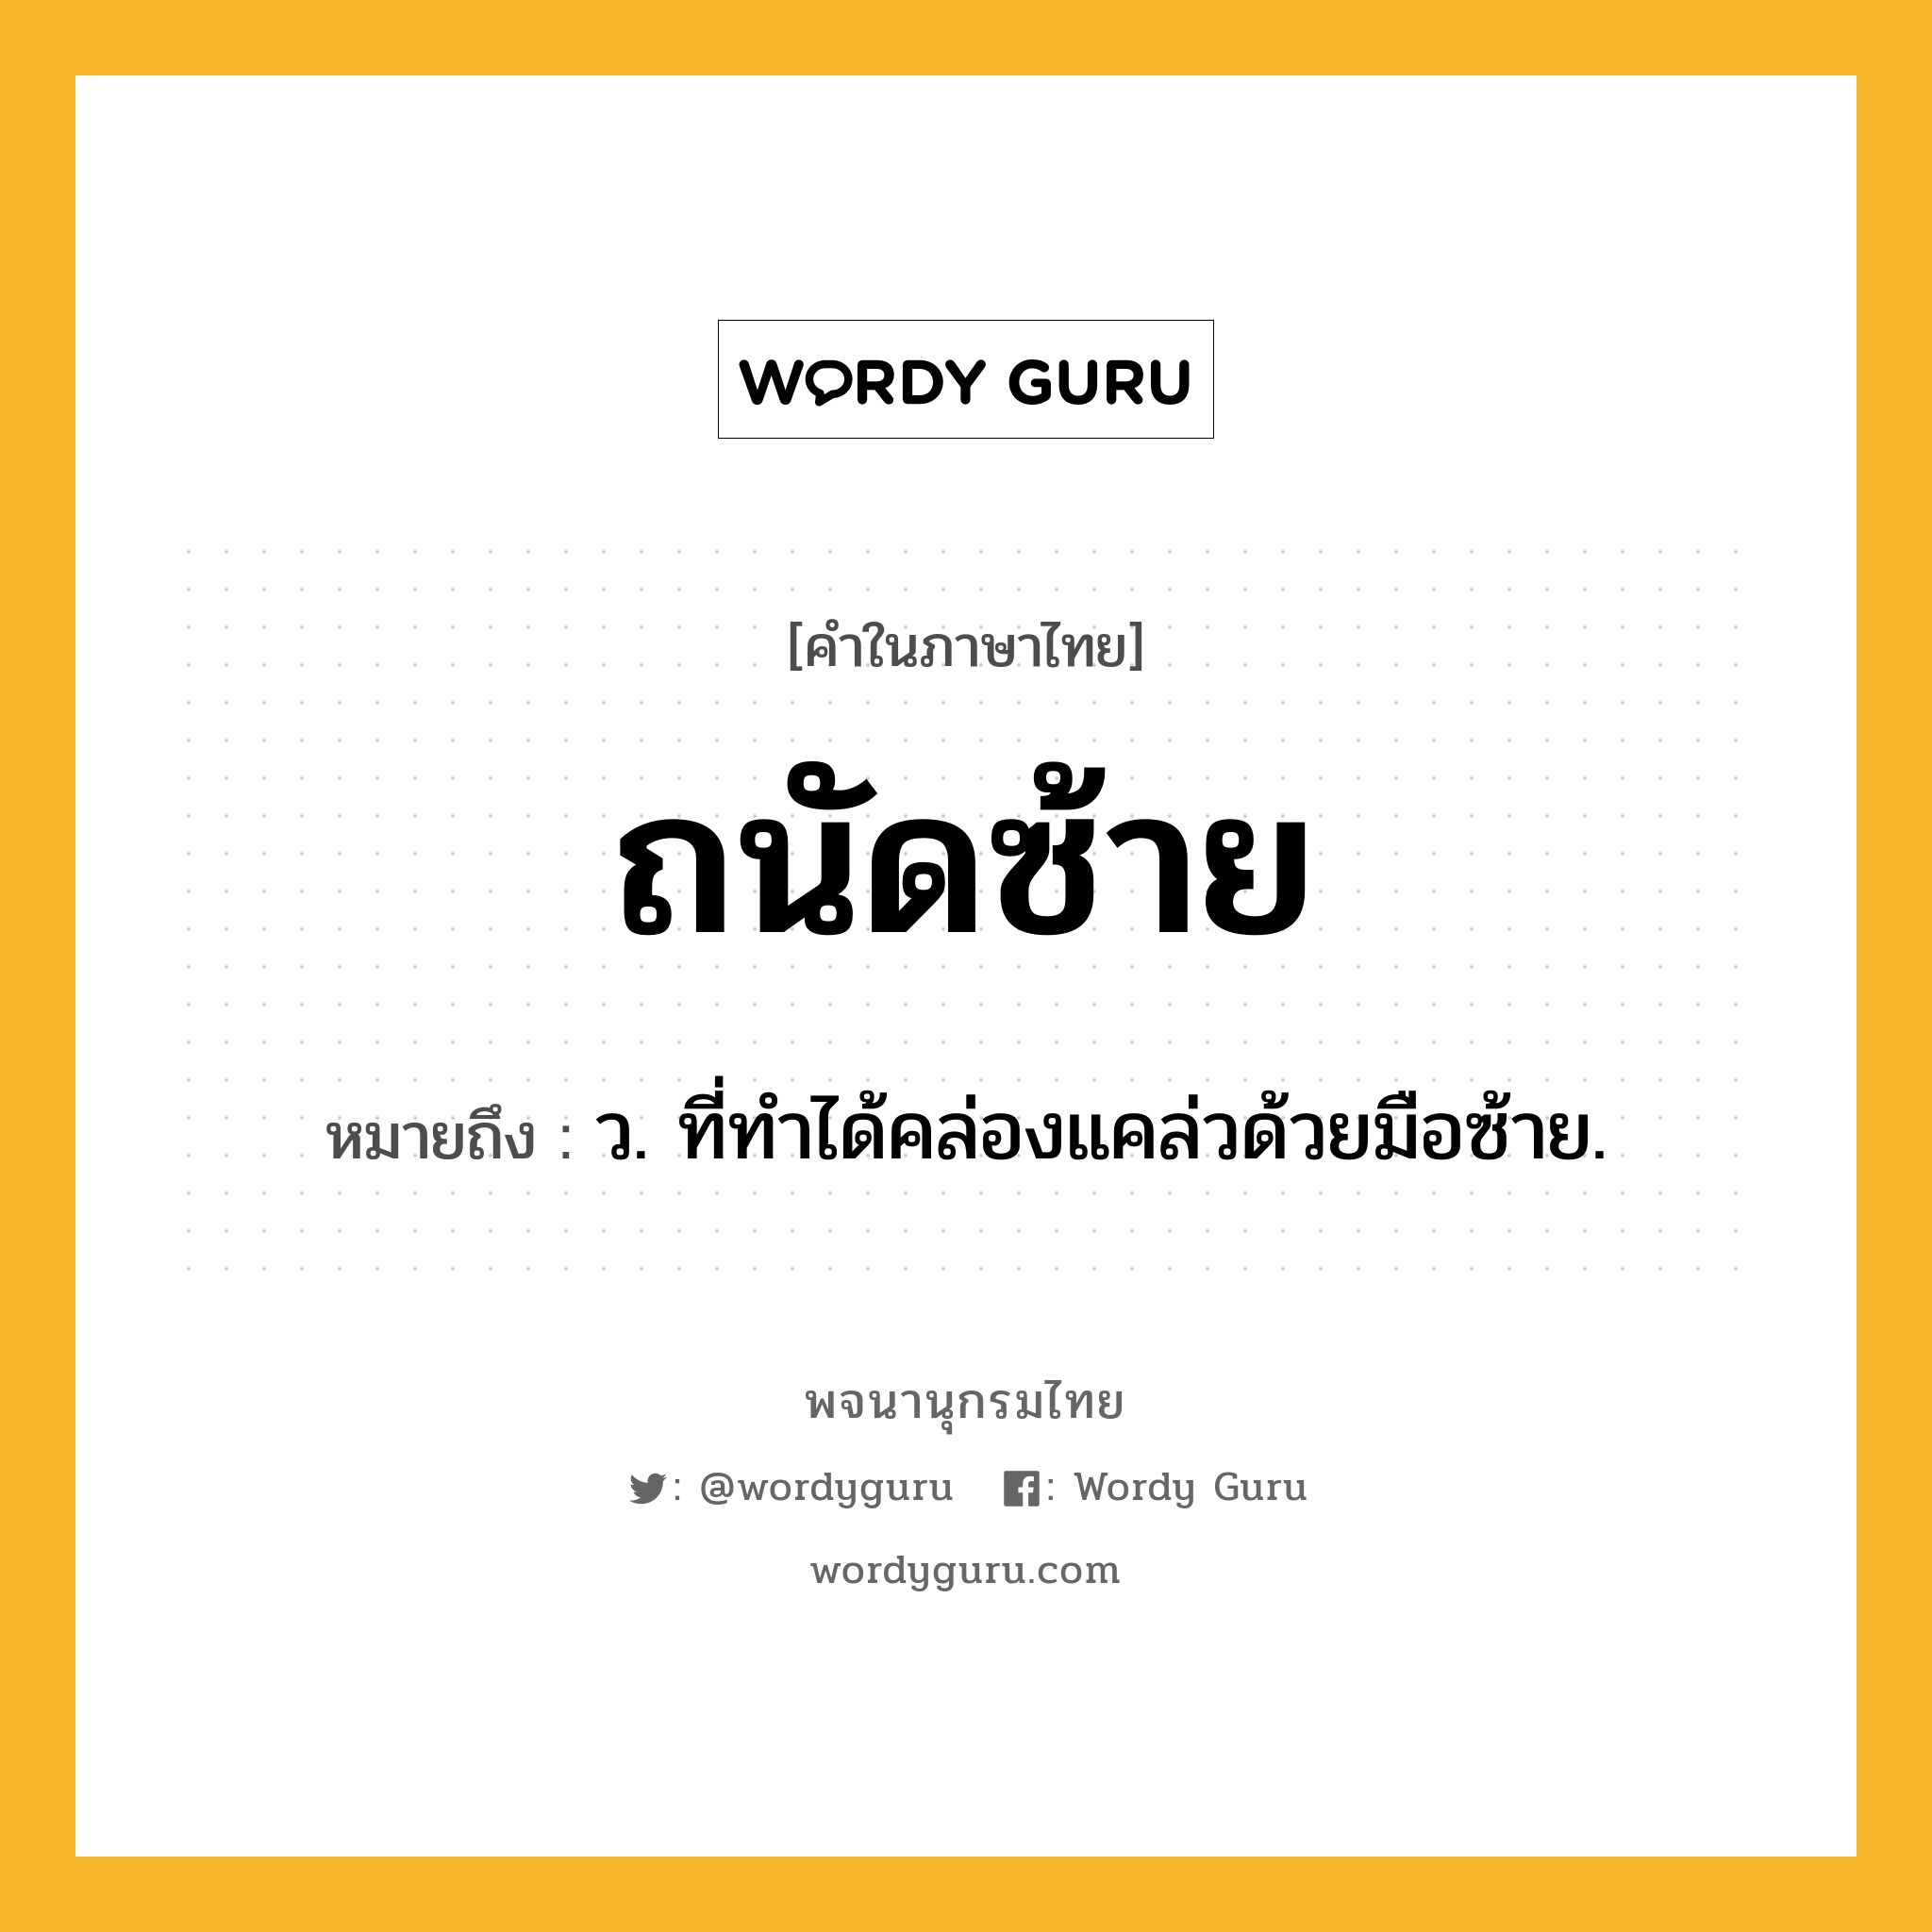 ถนัดซ้าย หมายถึงอะไร?, คำในภาษาไทย ถนัดซ้าย หมายถึง ว. ที่ทําได้คล่องแคล่วด้วยมือซ้าย.